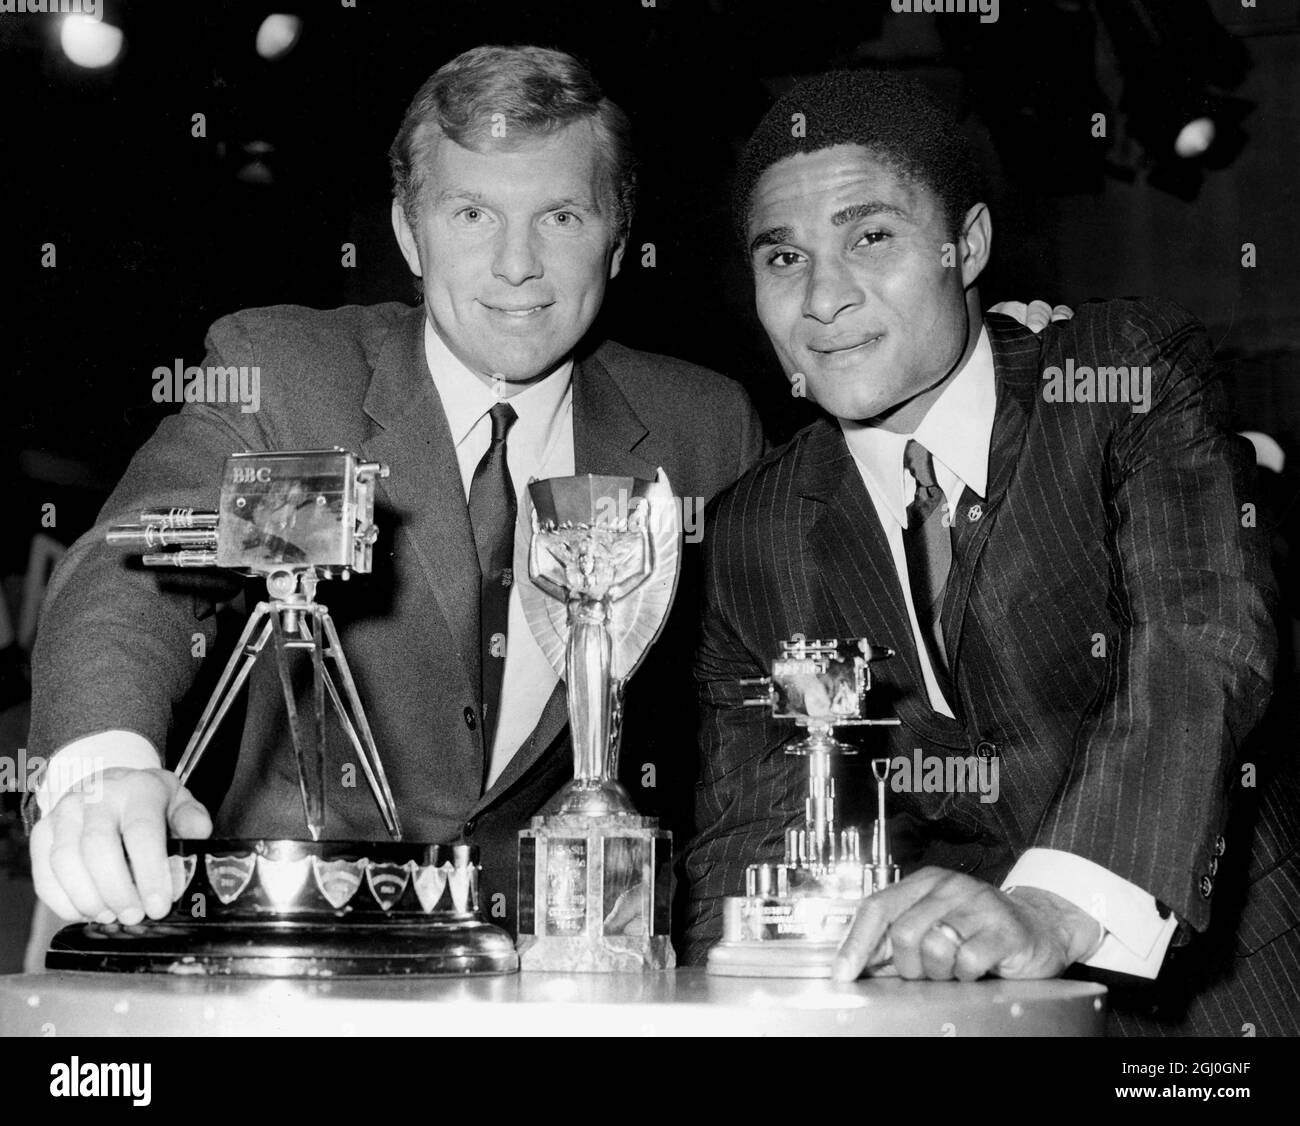 1966 personalità sportiva dell'anno. Due dei migliori calciatori internazionali vincono la personalità sportiva della BBC TV dell'anno. Il capitano d'Inghilterra, Booby Moore (sulla sinistra) e il portoghese, Eusebio, hanno ricevuto premi durante la cerimonia. 16 dicembre 1966 Foto Stock